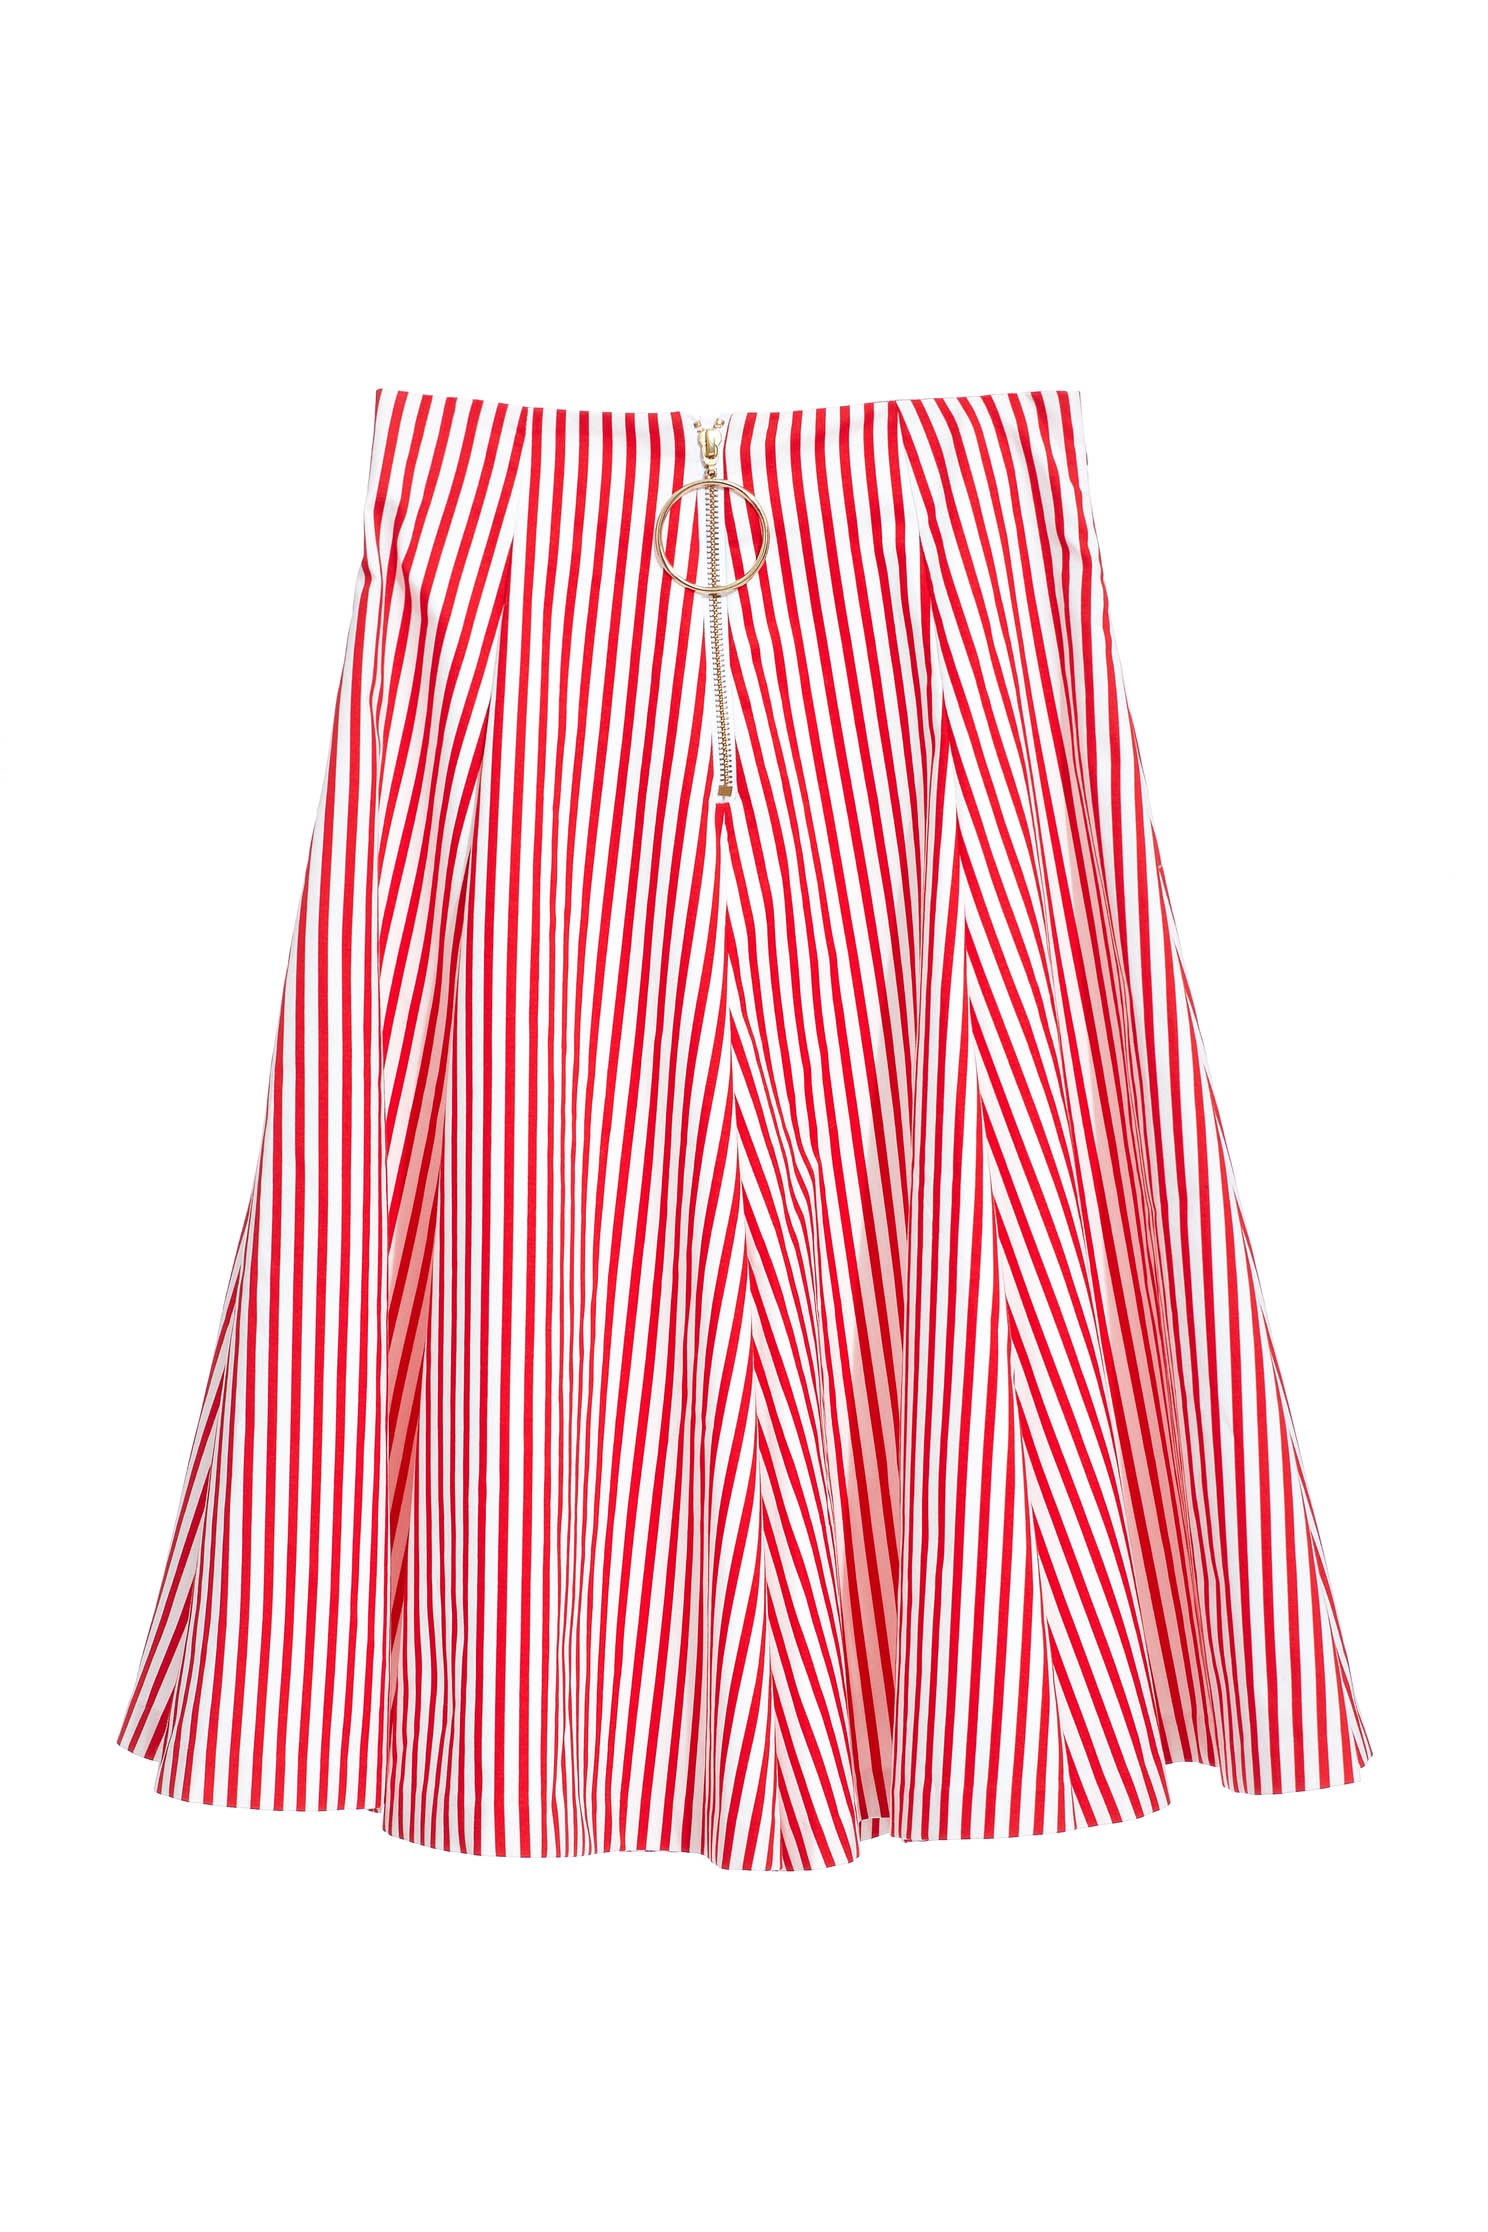 紅白條紋裙紅白條紋裙,春夏穿搭,條紋,網裙,長裙